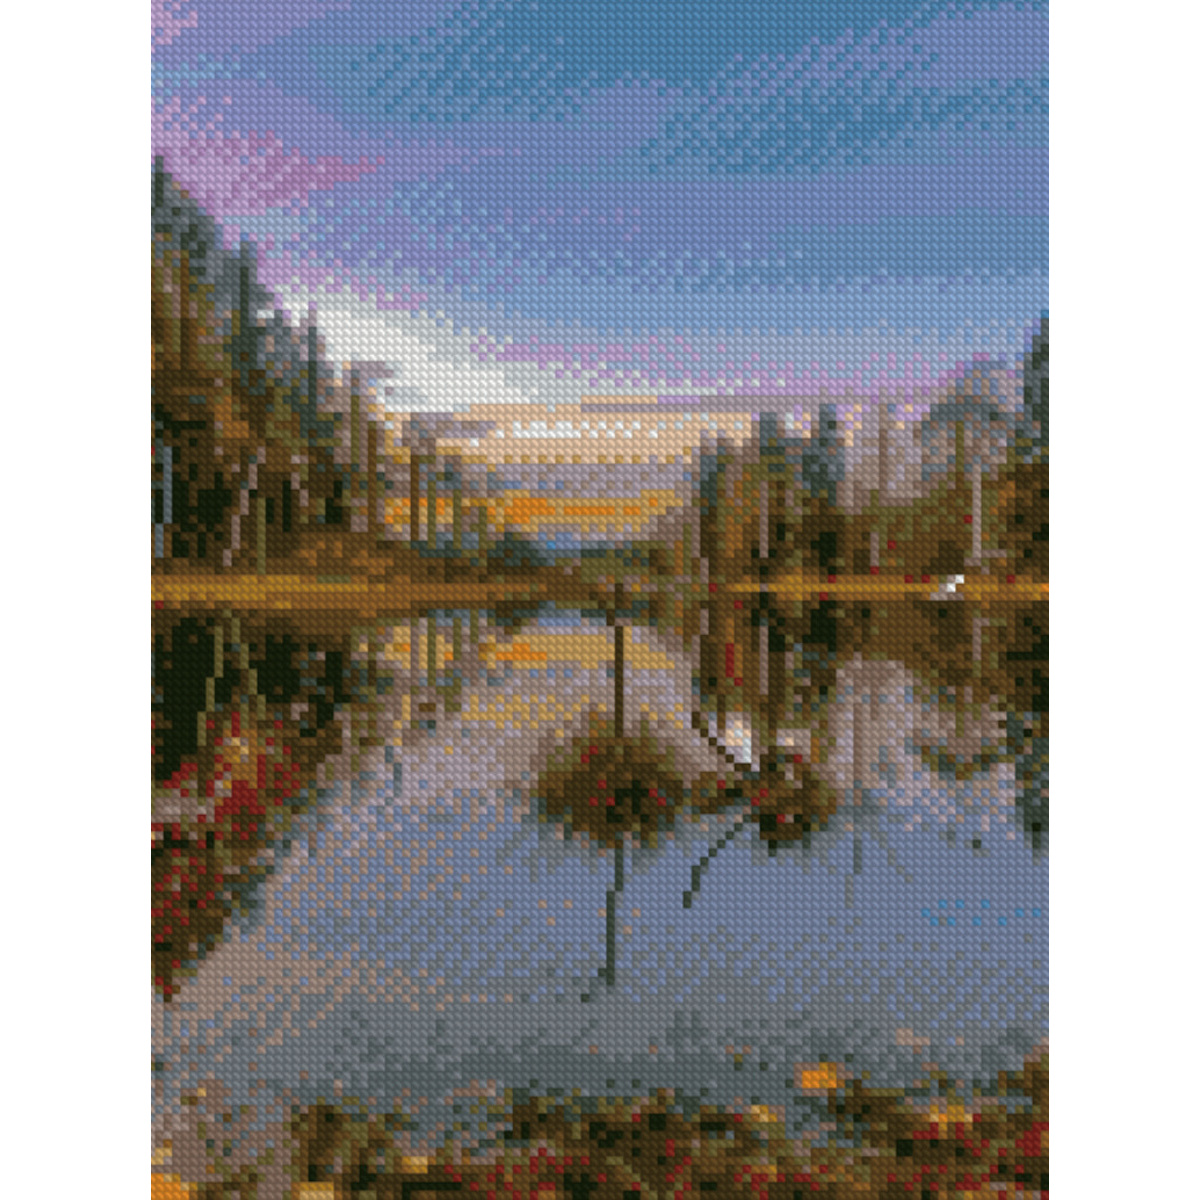 Diamond mosaic Premium HX140 "Cold Landscape", size 30x40 cm